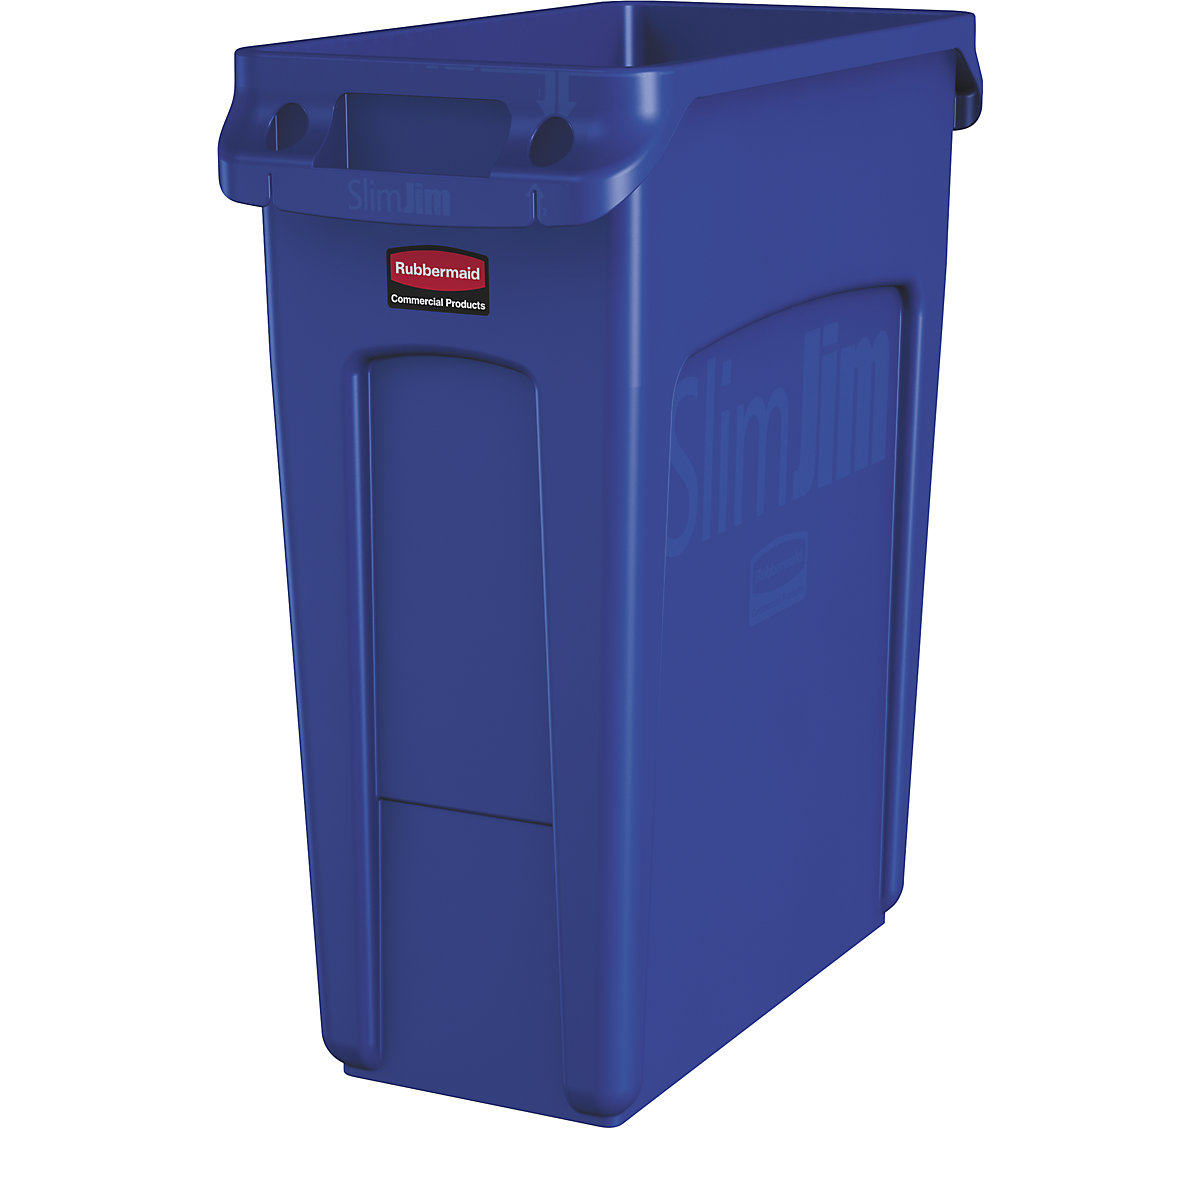 Coletor de materiais recicláveis/balde do lixo SLIM JIM® – Rubbermaid, volume 60 l, com canais de ventilação, azul-5